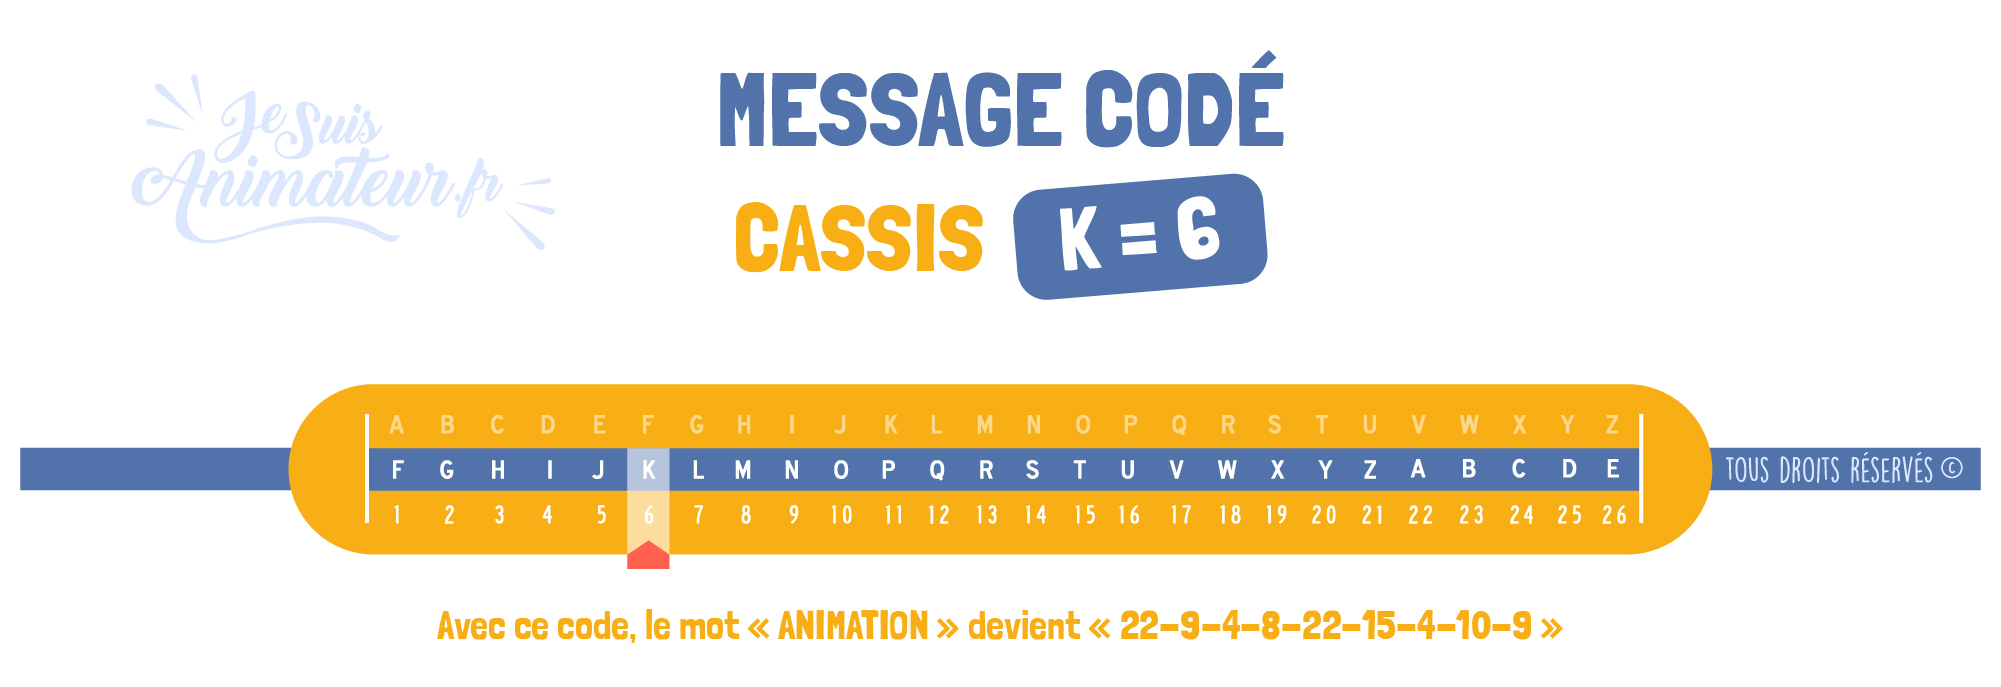 Message codé « Cassis » (K = 6)